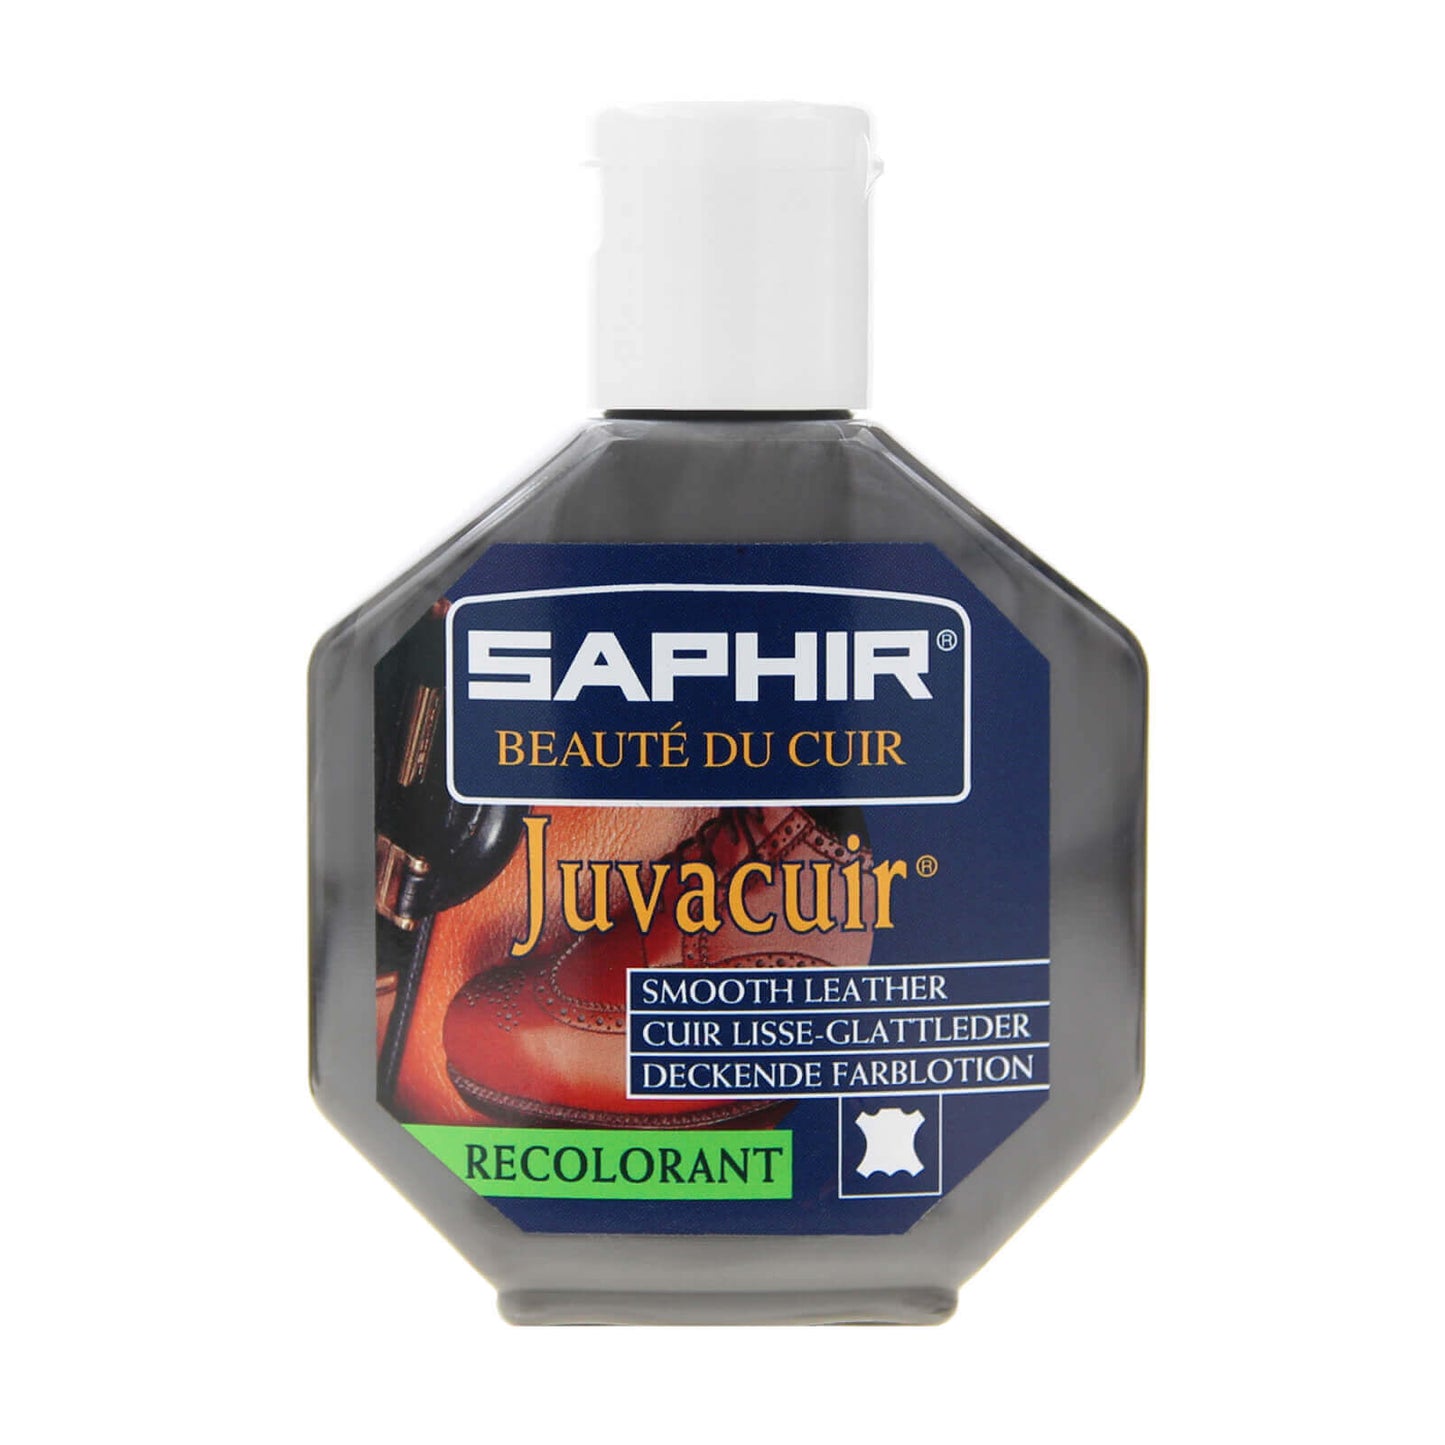 Crema Recolorante con Resina Reparadora Juvacuir Saphir BDC